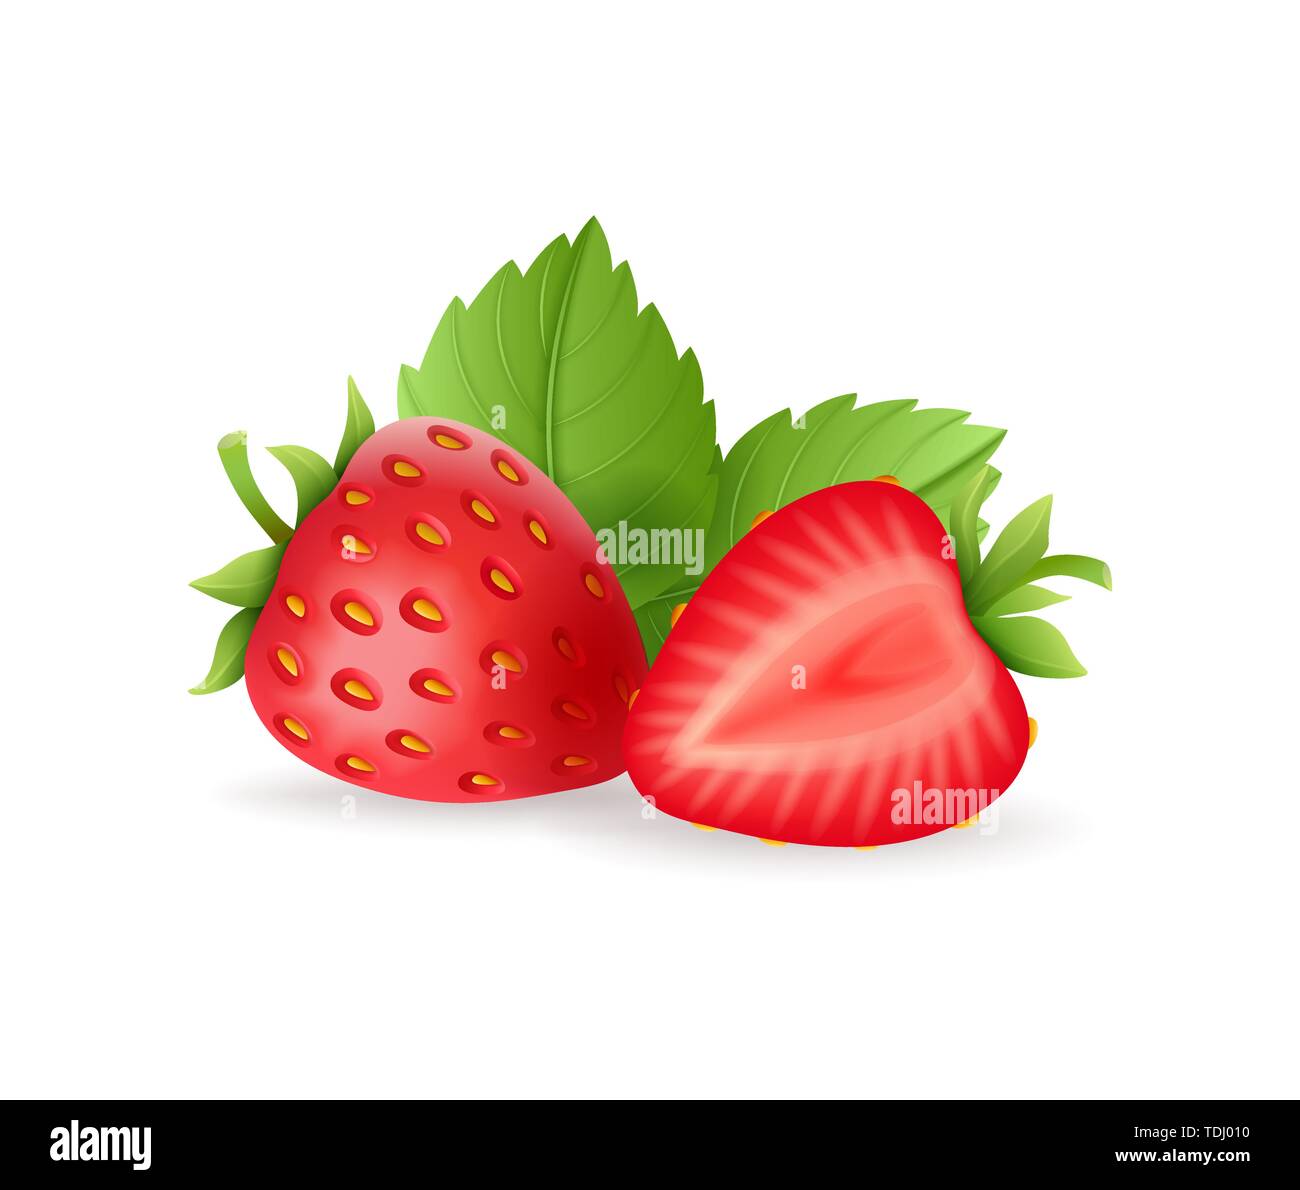 Realistica di fragole dolci insieme con il verde delle foglie fresche di bacche rosse, isolato su sfondo bianco illustrazione vettoriale. Illustrazione Vettoriale